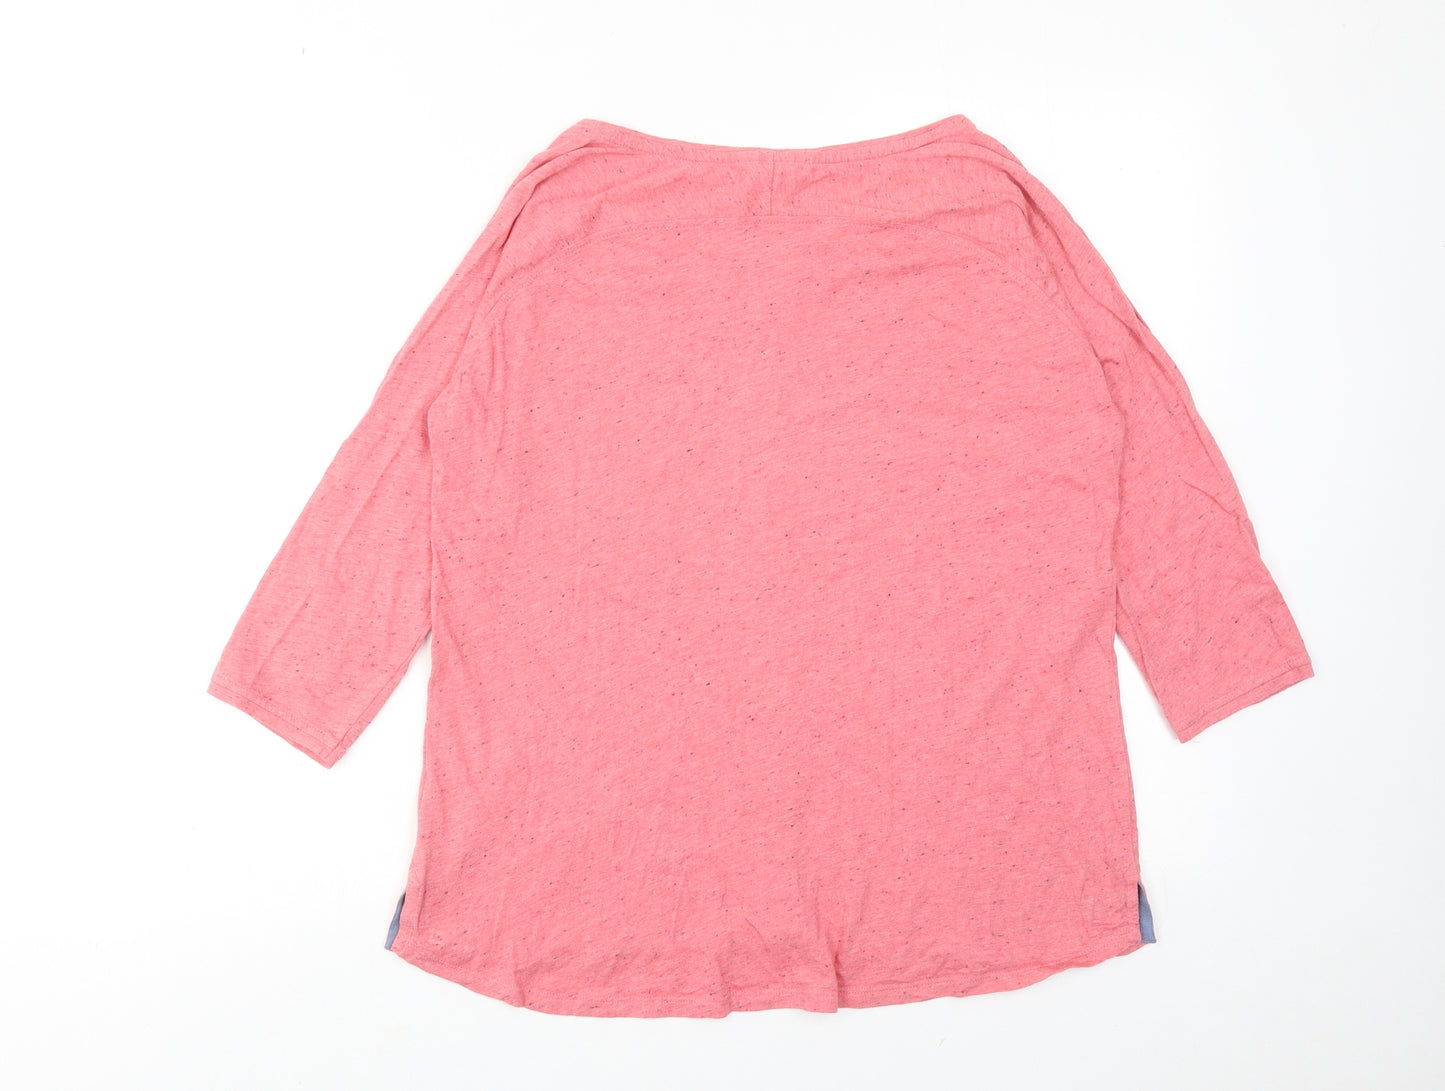 White Stuff Womens Pink Cotton Basic T-Shirt Size 14 Boat Neck